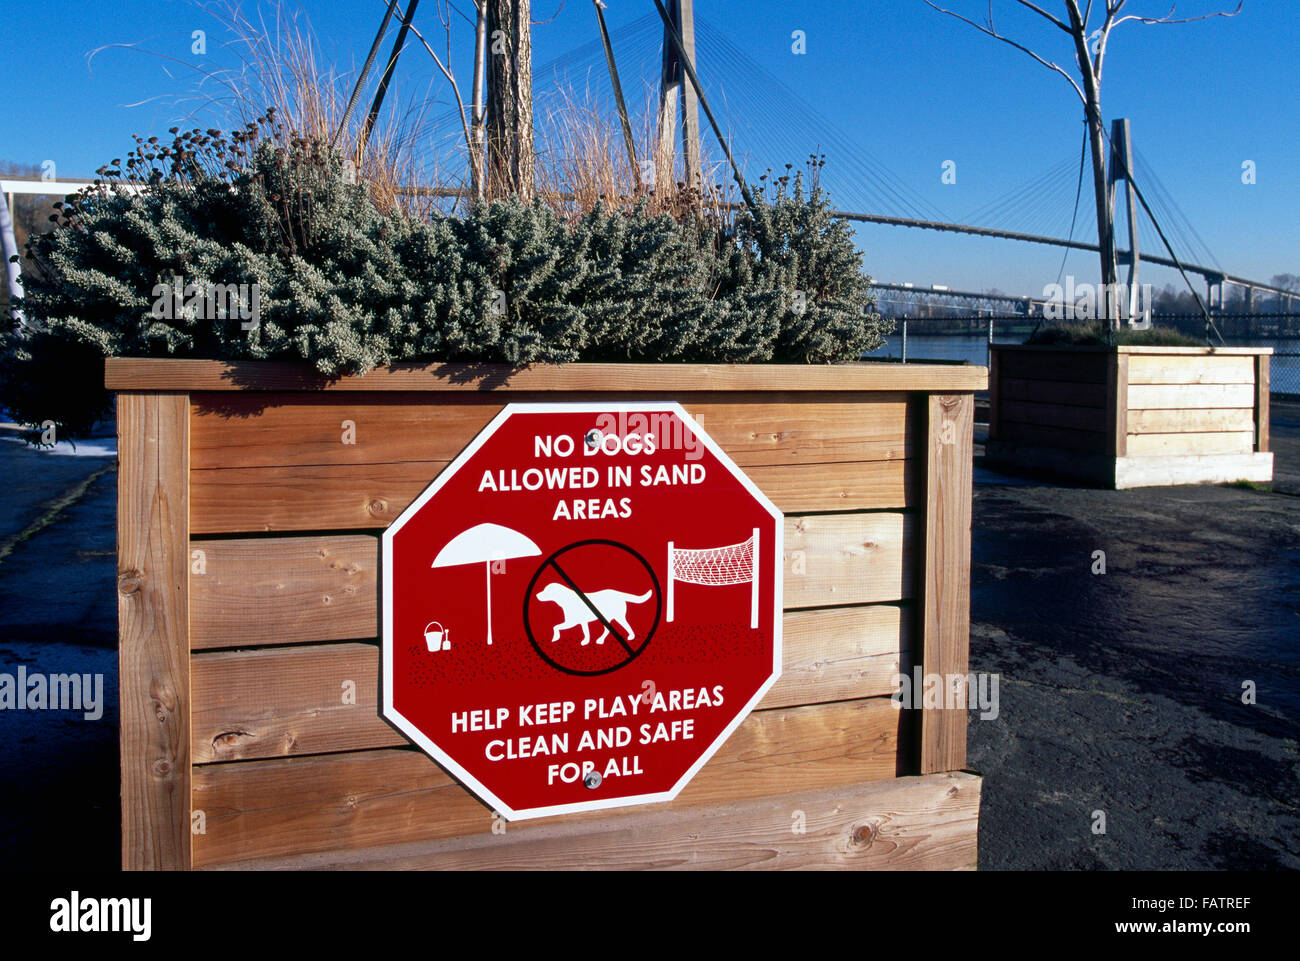 Chiens non admis dans les zones de sable Signe, Westminster Pier Park, New Westminster, Colombie-Britannique, Canada - Information sur le contrôle des chiens Banque D'Images